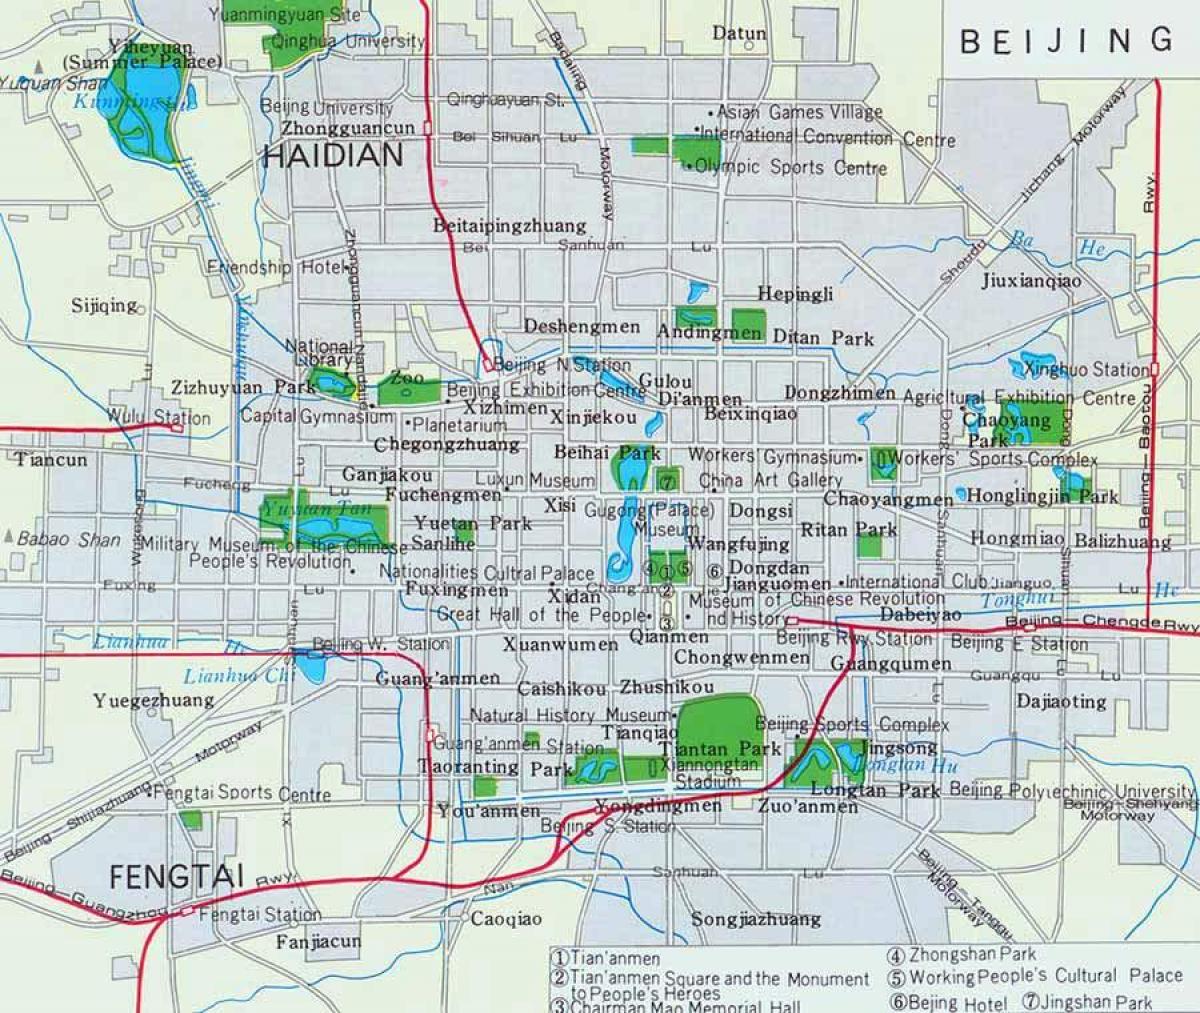 Mapa do centro da cidade de pequim